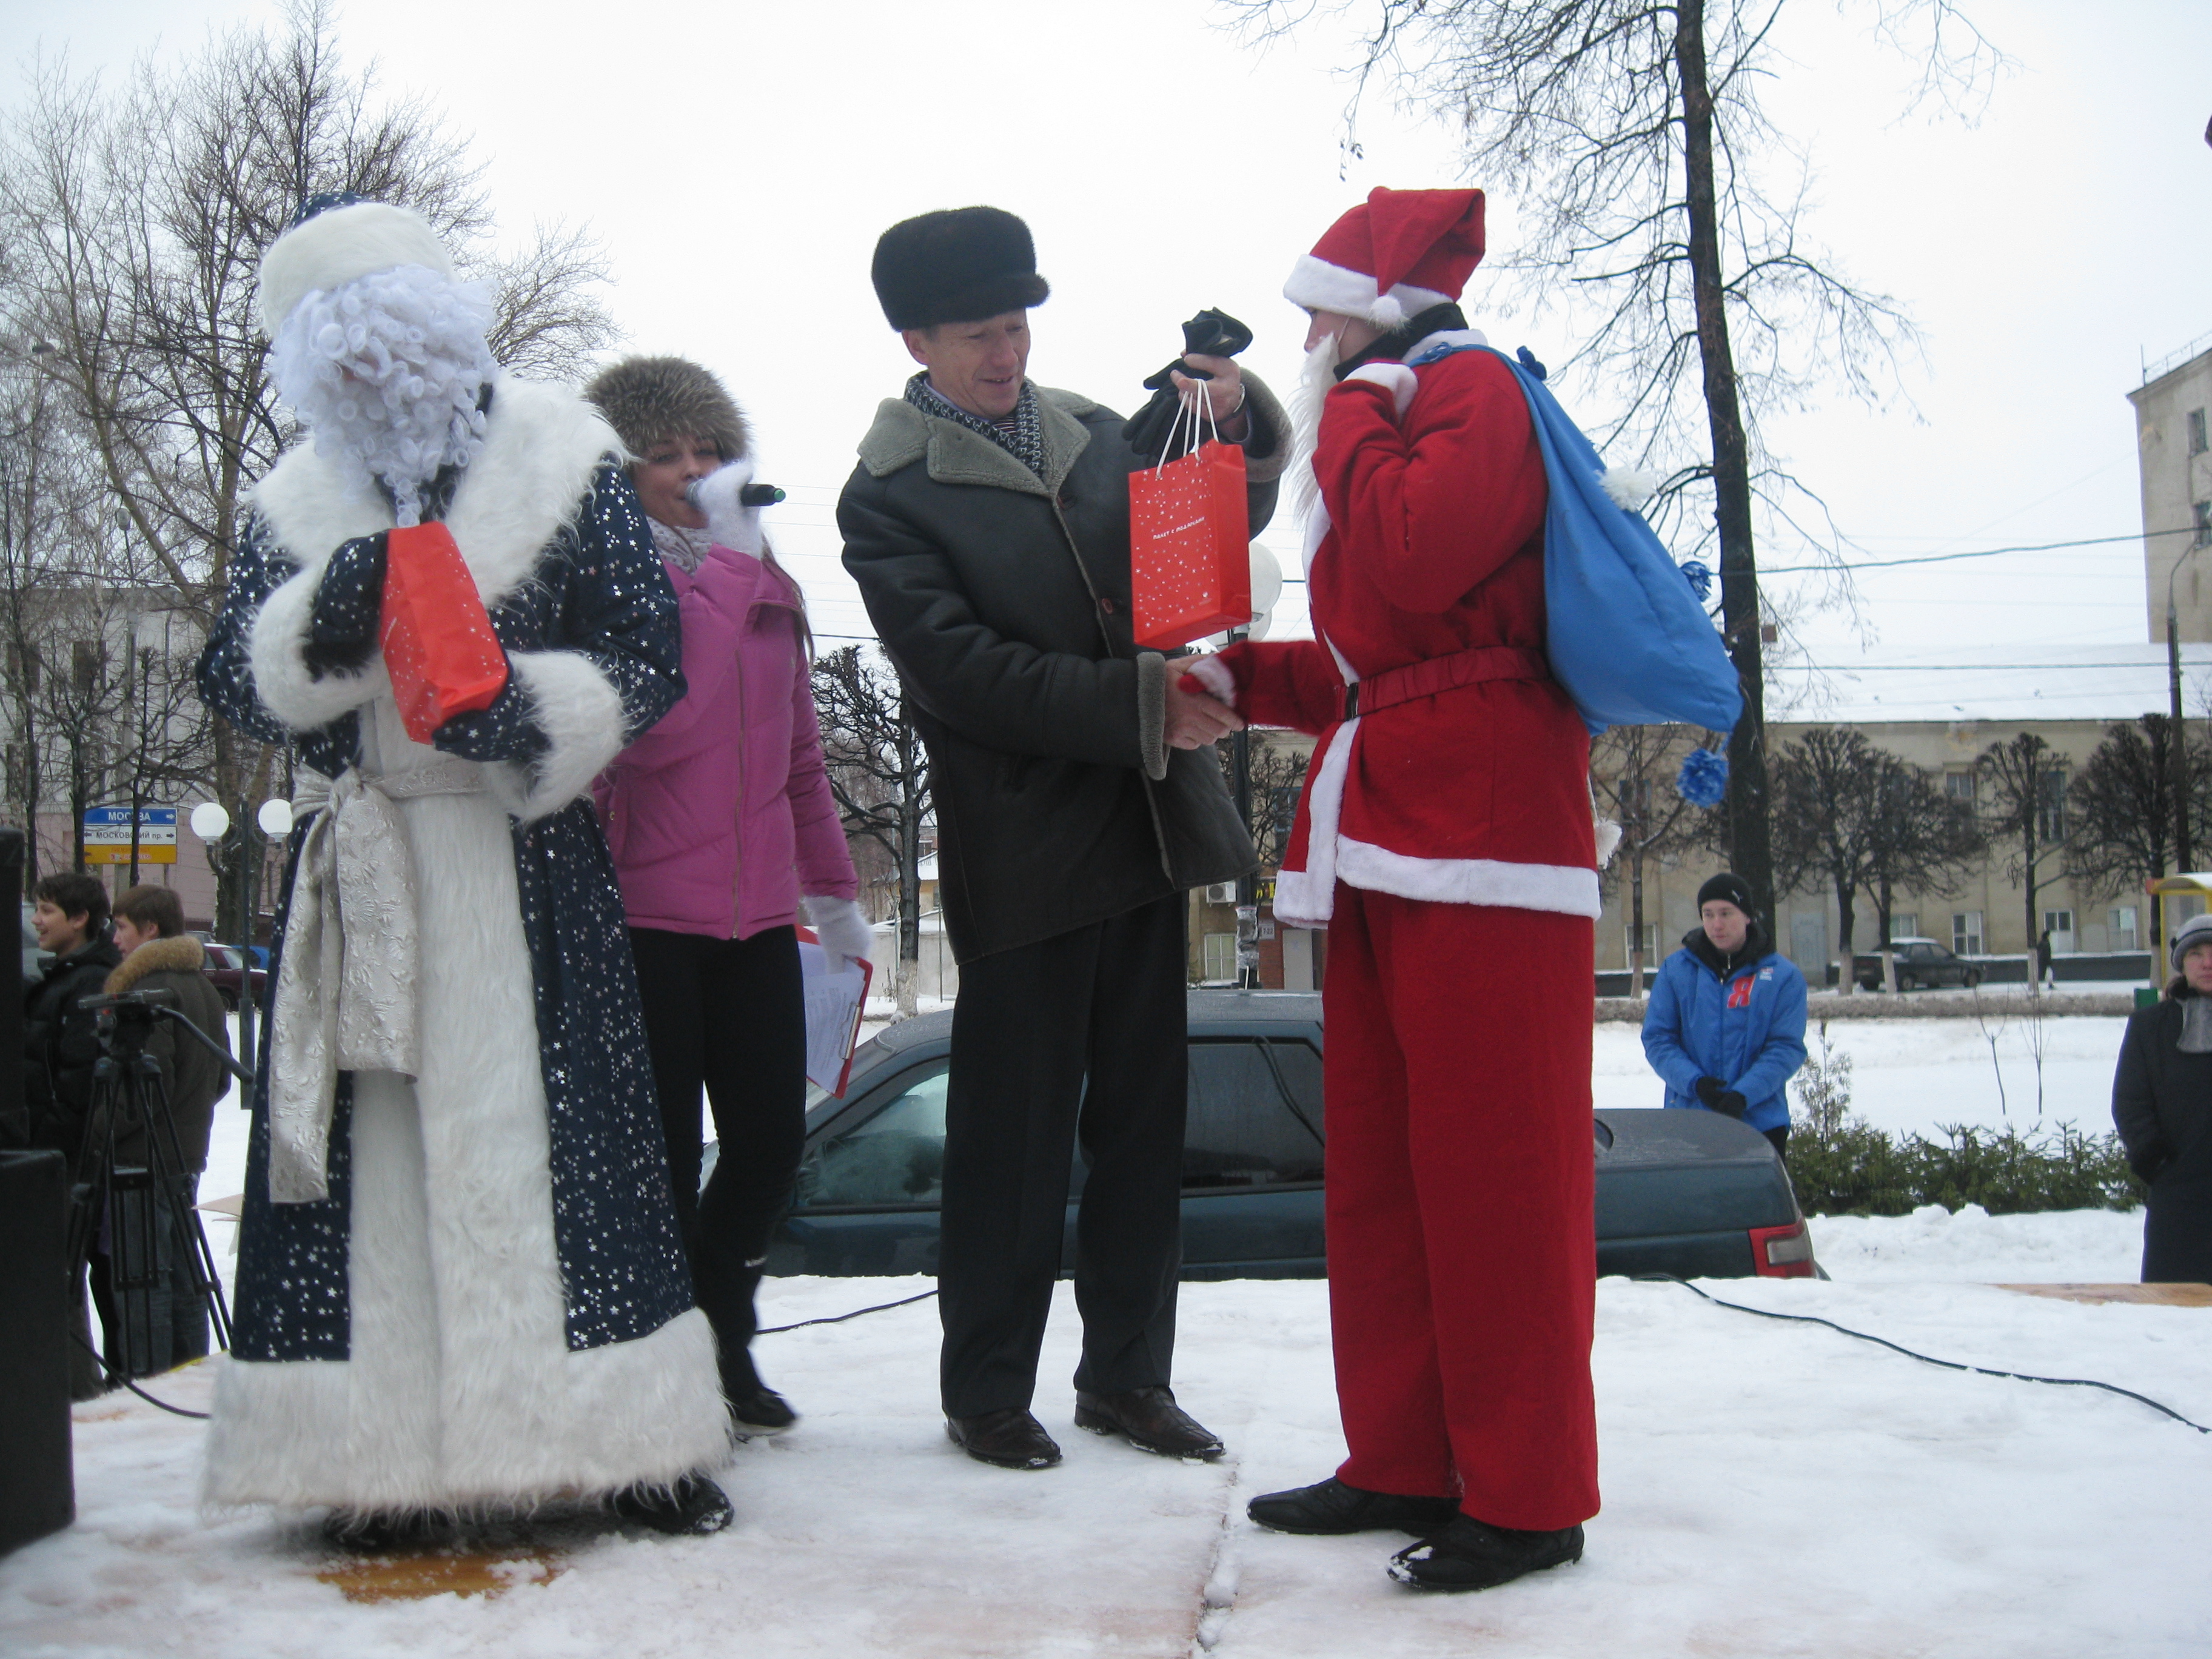 08:29 Московский район г. Чебоксары: состоялось празднование Дня рождения студенческой новогодней елки